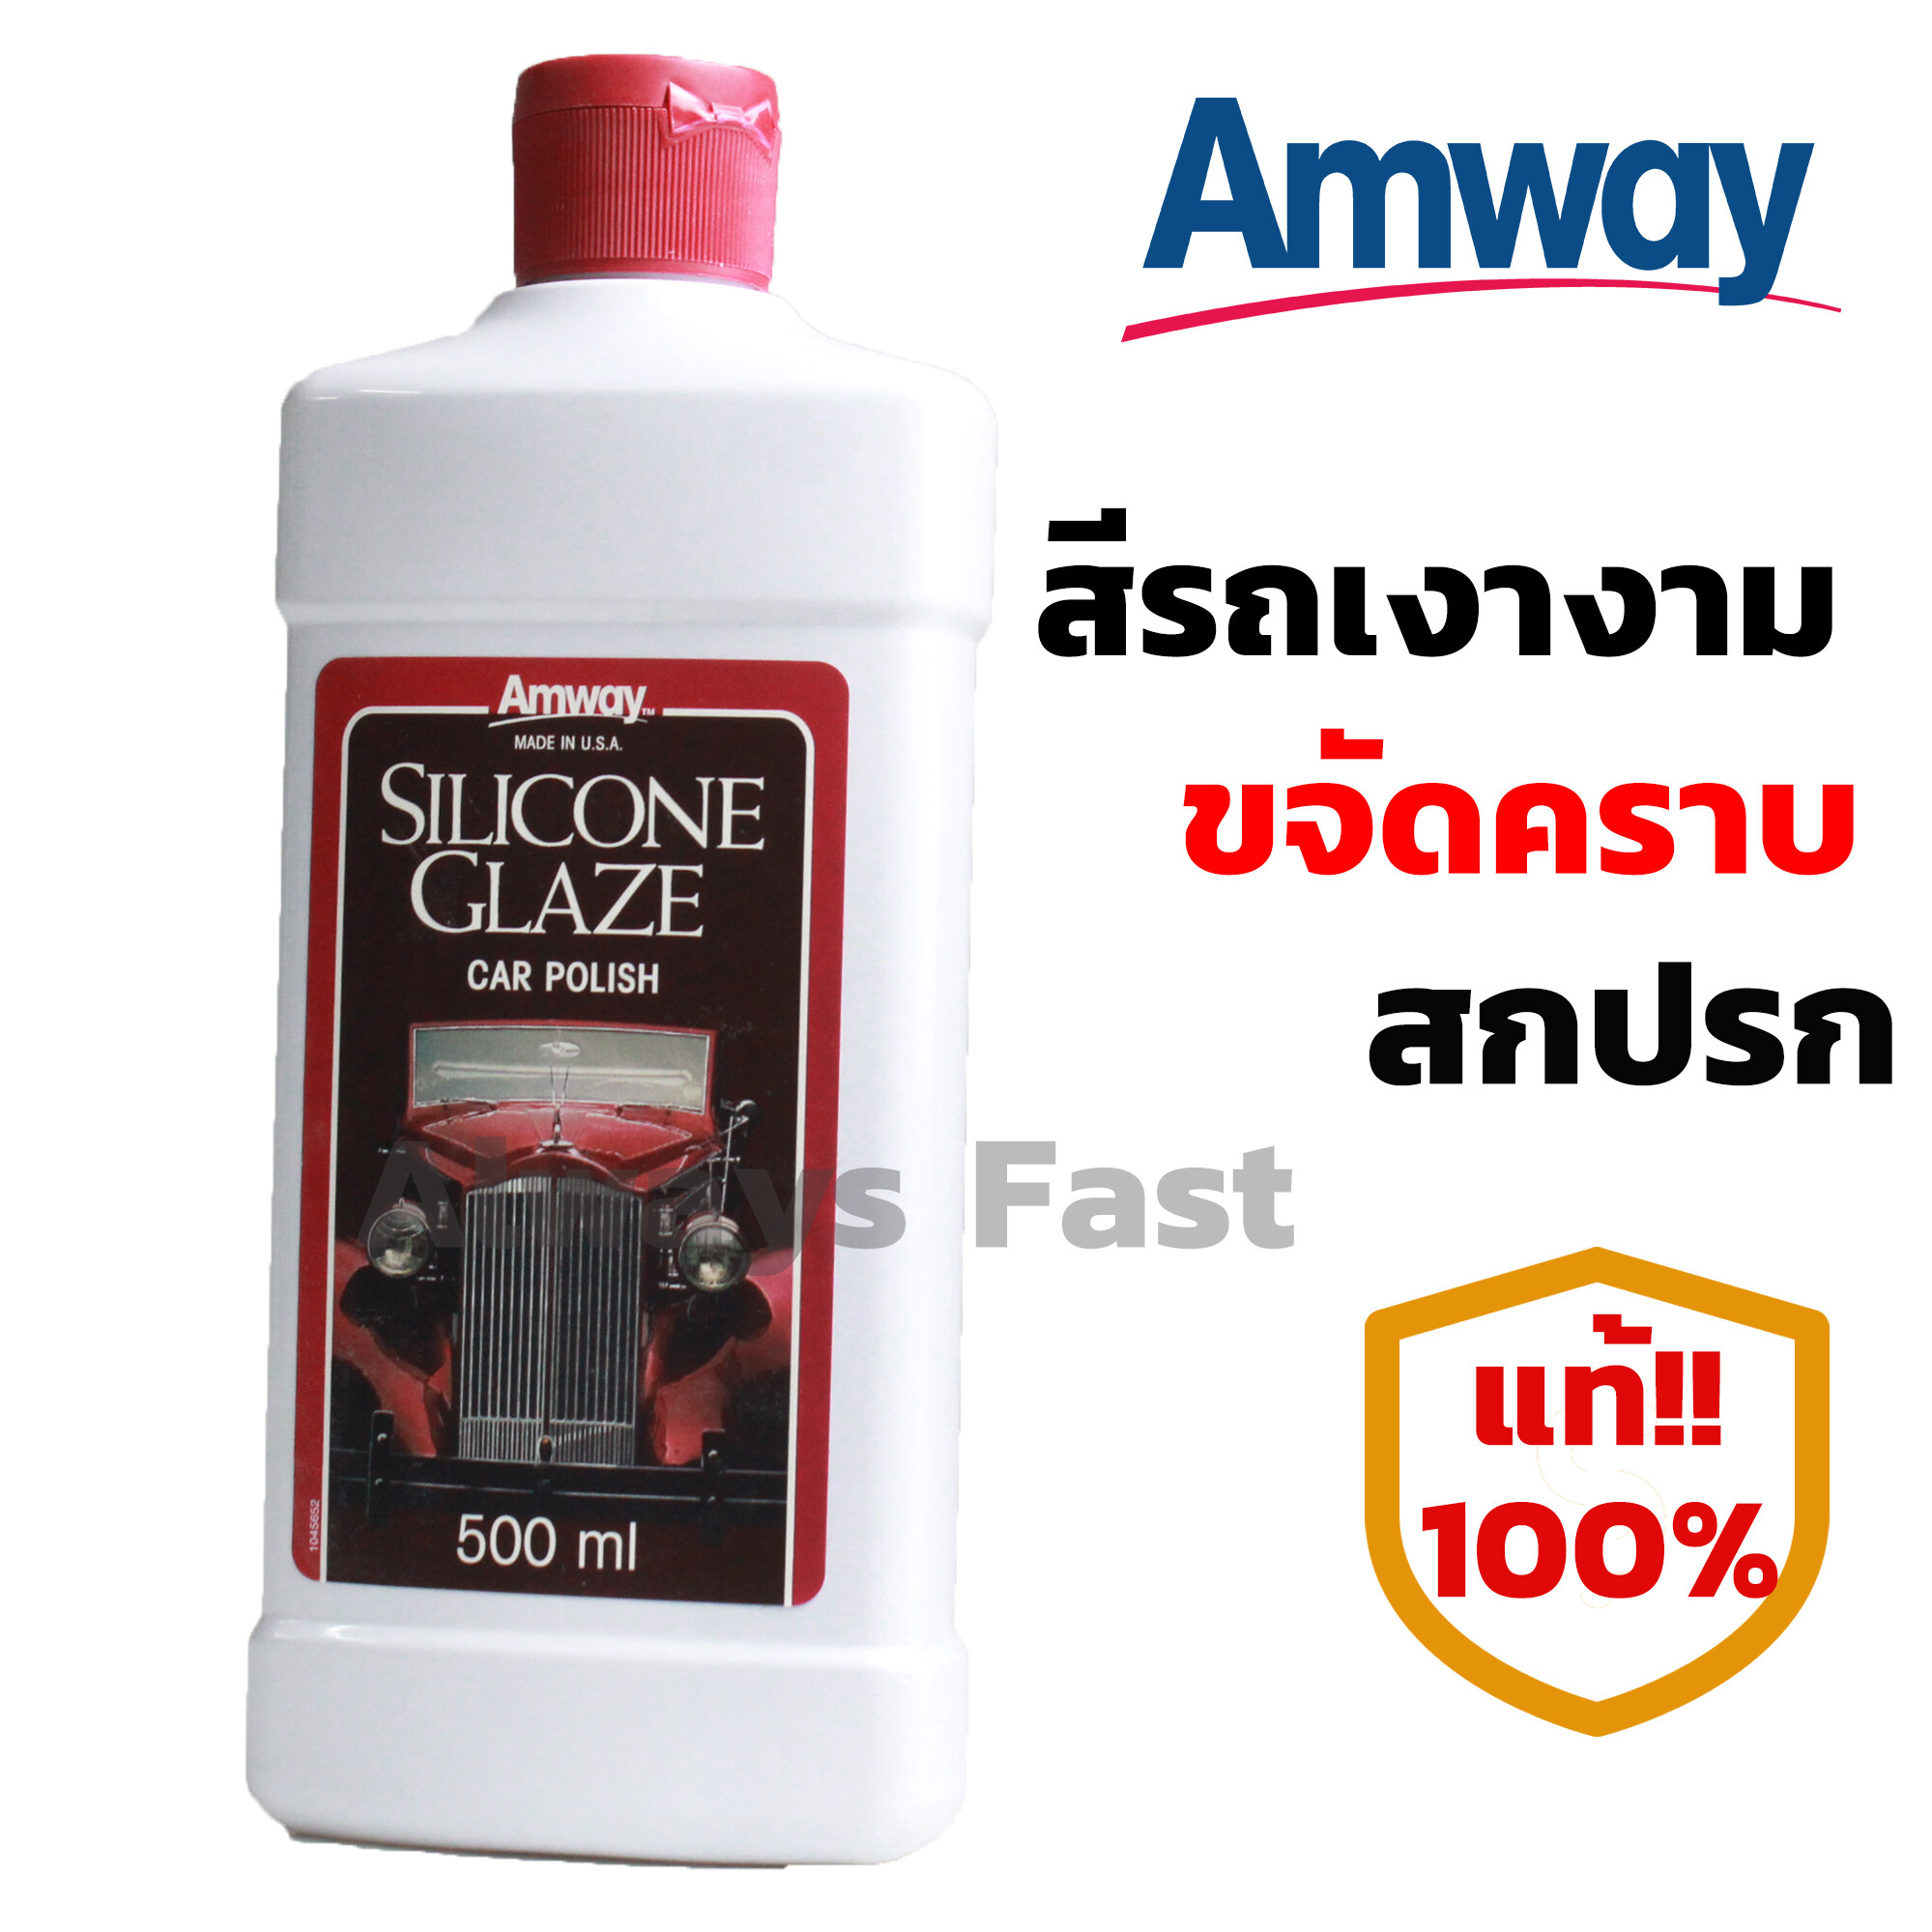 ส่งด่วน!! น้ำยาเคลือบเงา Amway silicone Glaze Car Polish ขนาด 500 มล. ของแท้100% ขัด เคลือบสีรถยนต์ เงาวับ น้ำยาขัดเคลือบเงารถ น้ำยาล้างรถ แอมเวย์